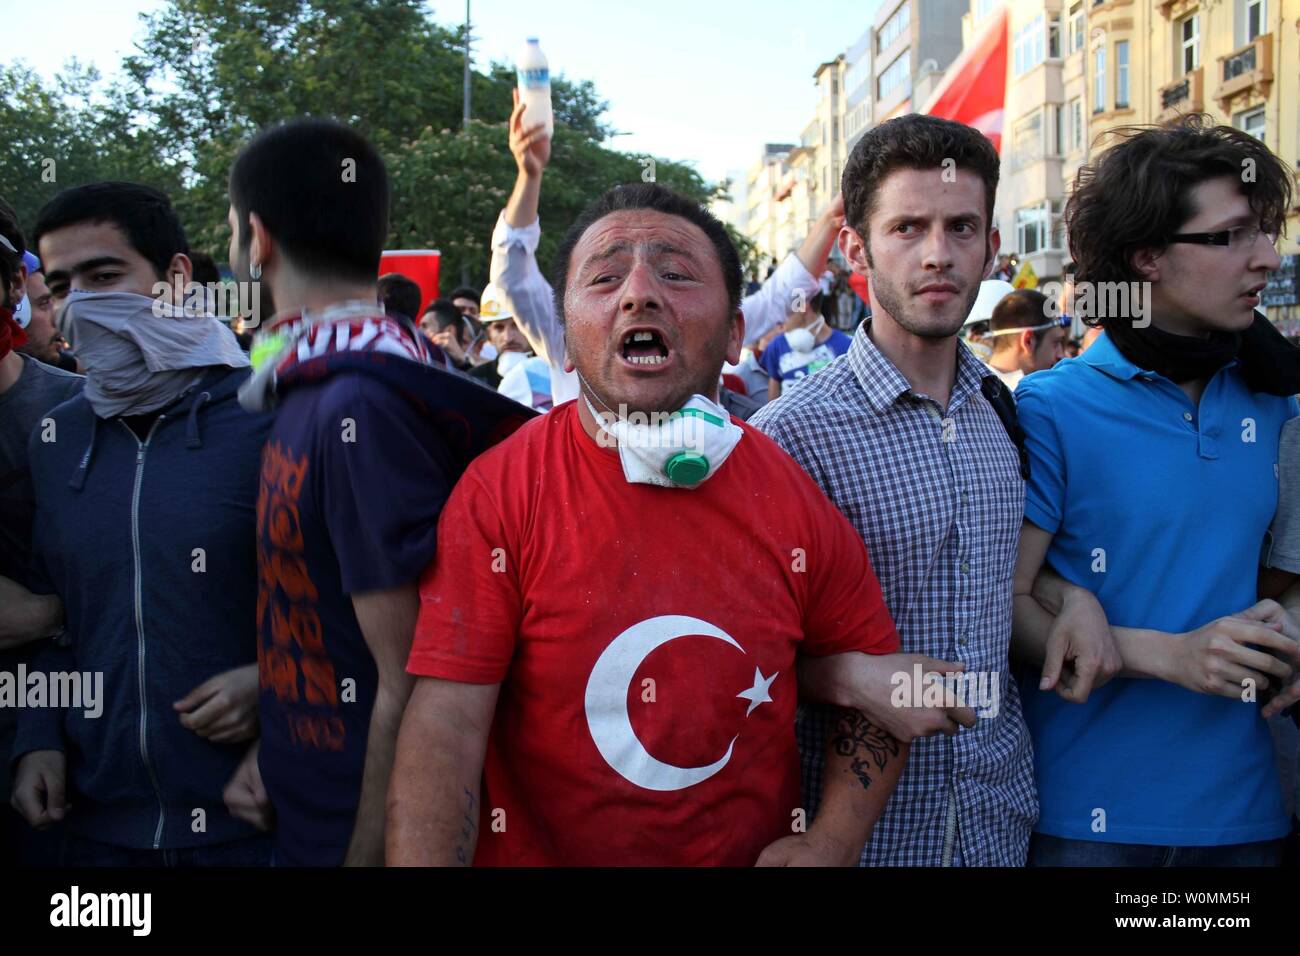 Die demonstranten Schlacht Bereitschaftspolizei am Taksim-Platz in Istanbul in der Türkei am 11. Juni 2013. Ruhe kehrte in den Platz am Juni 12, 2013 Nachdem die Demonstranten waren aus dem Bereich zwei Wochen nach Beginn der Proteste gegen die Modernisierung des Platzes, wurde schnell ein anti-government Protests gelöscht. UPI/Nasir Lone Stockfoto